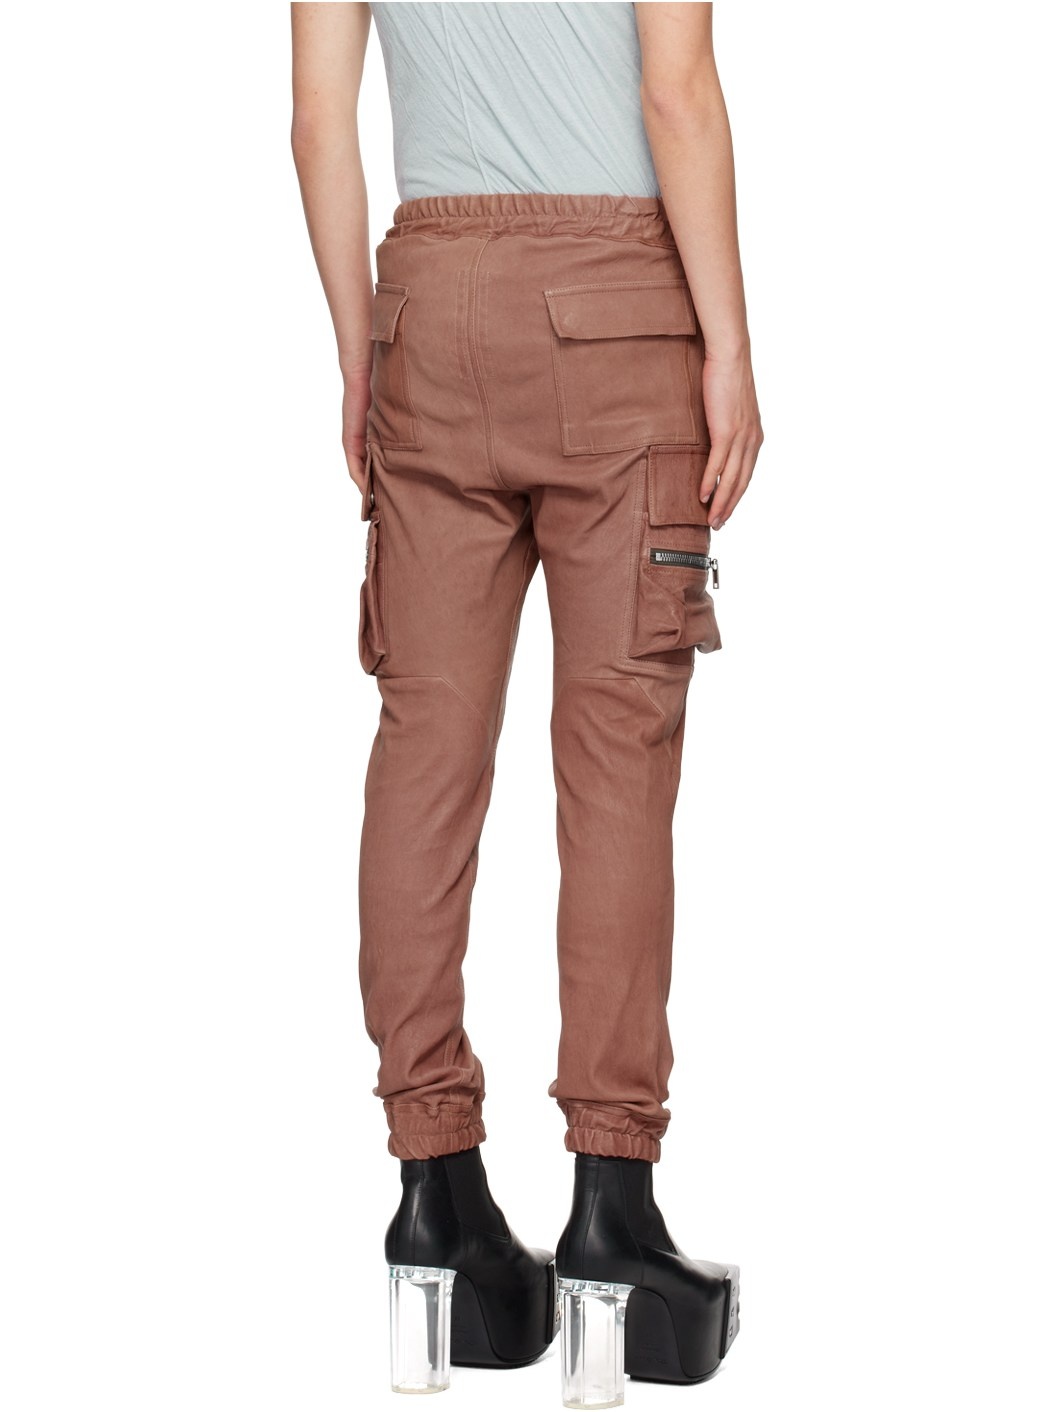 Pink Porterville Mastodon Leather Pants - 3